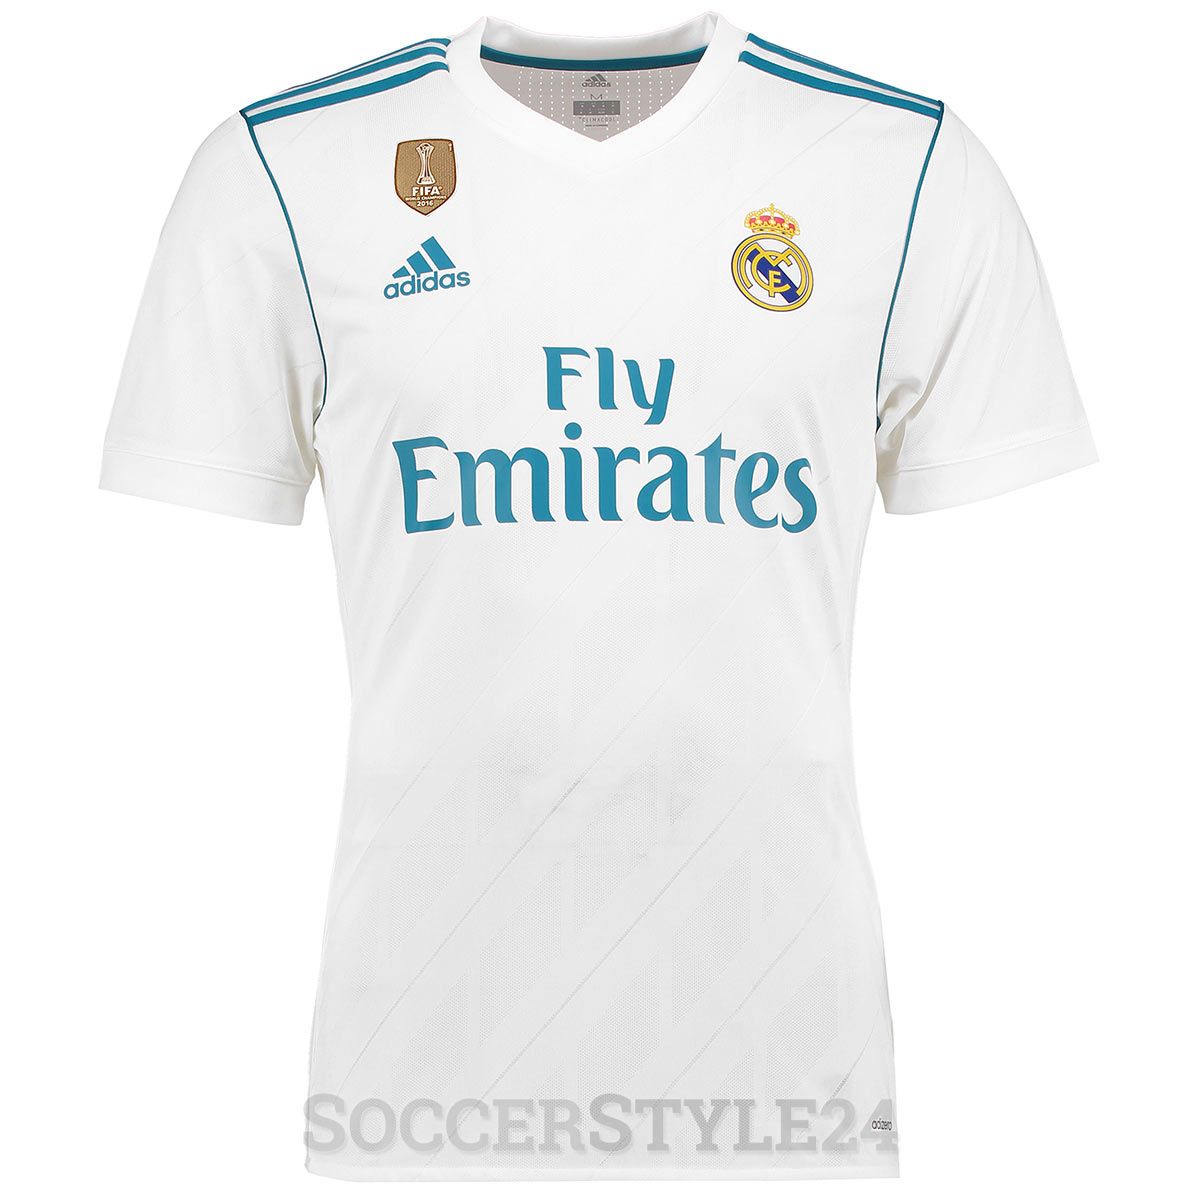 Maglie Real Madrid 2017-2018, le novità di adidas per i Campioni